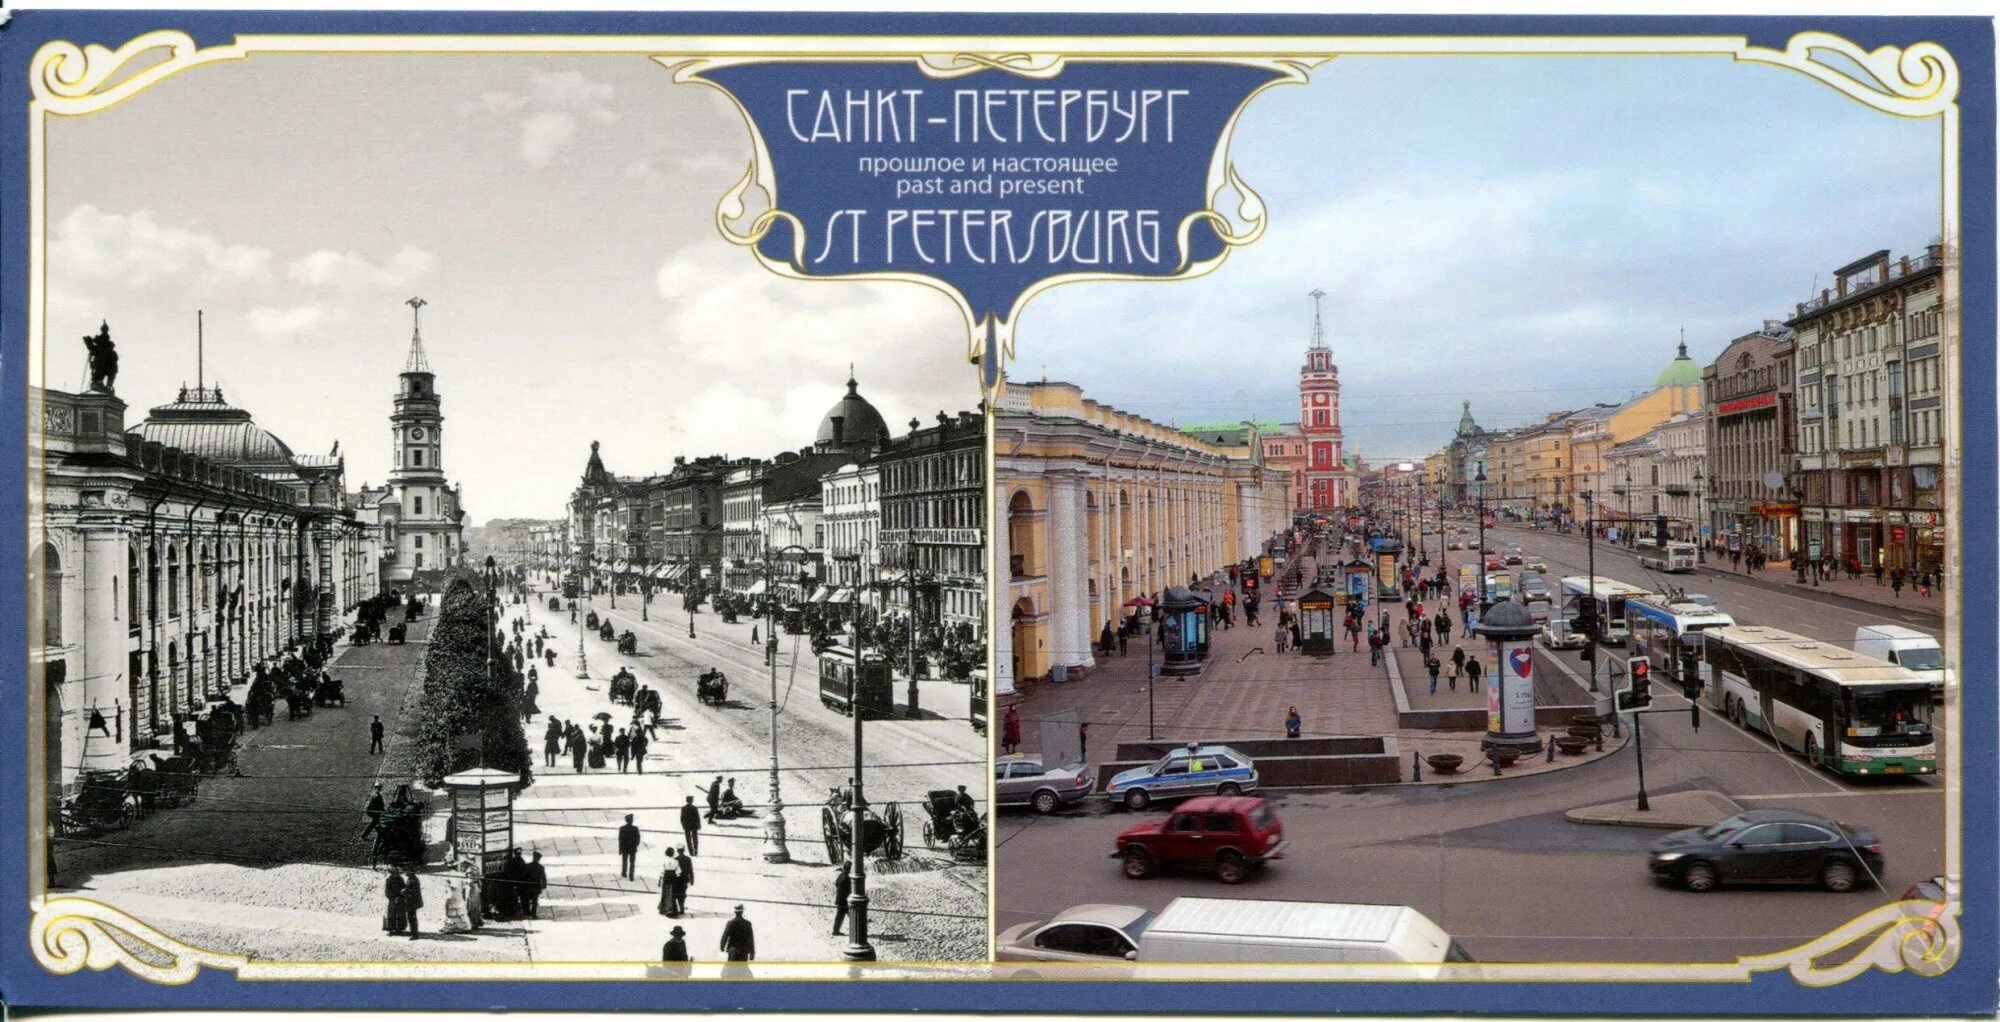 Функции Санкт Петербурга в прошлом. Санкт петербург какой город раньше был